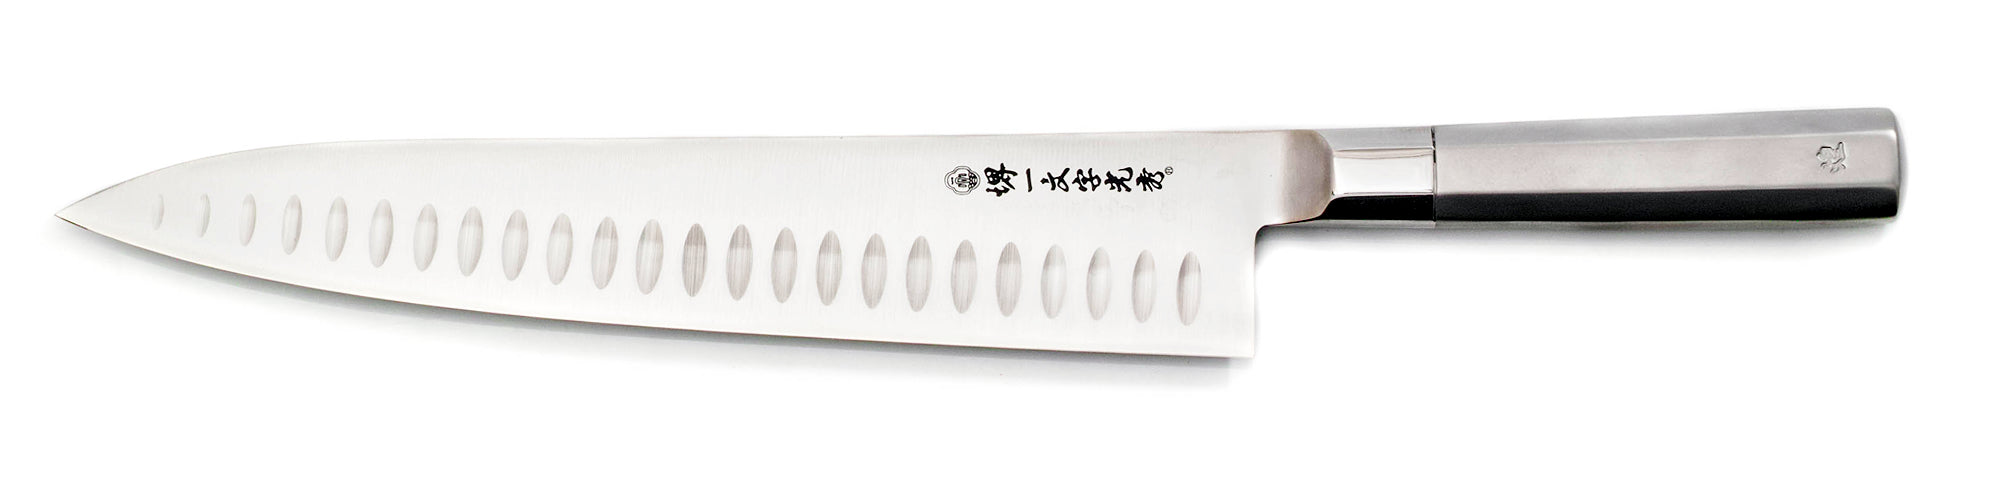 Coltello da chef Gyuto - Inossidabile VG1- Kirameki manico in acciaio - alveolato